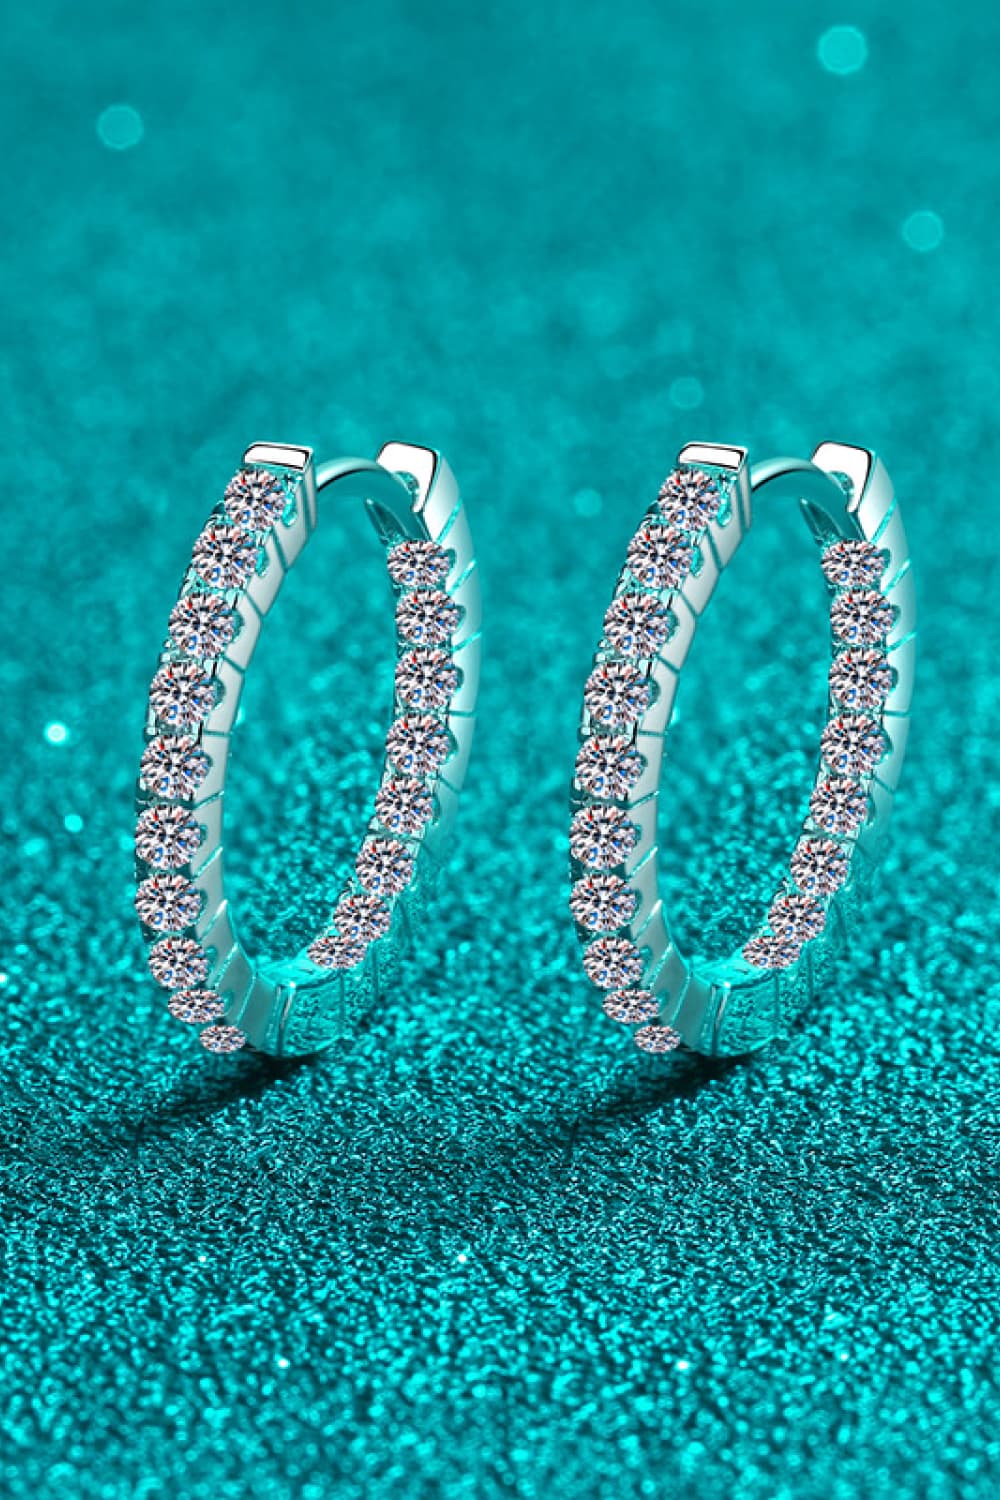 Moissanite 925 Sterling Silver Huggie Earrings Length 0.7" Carat 0.9